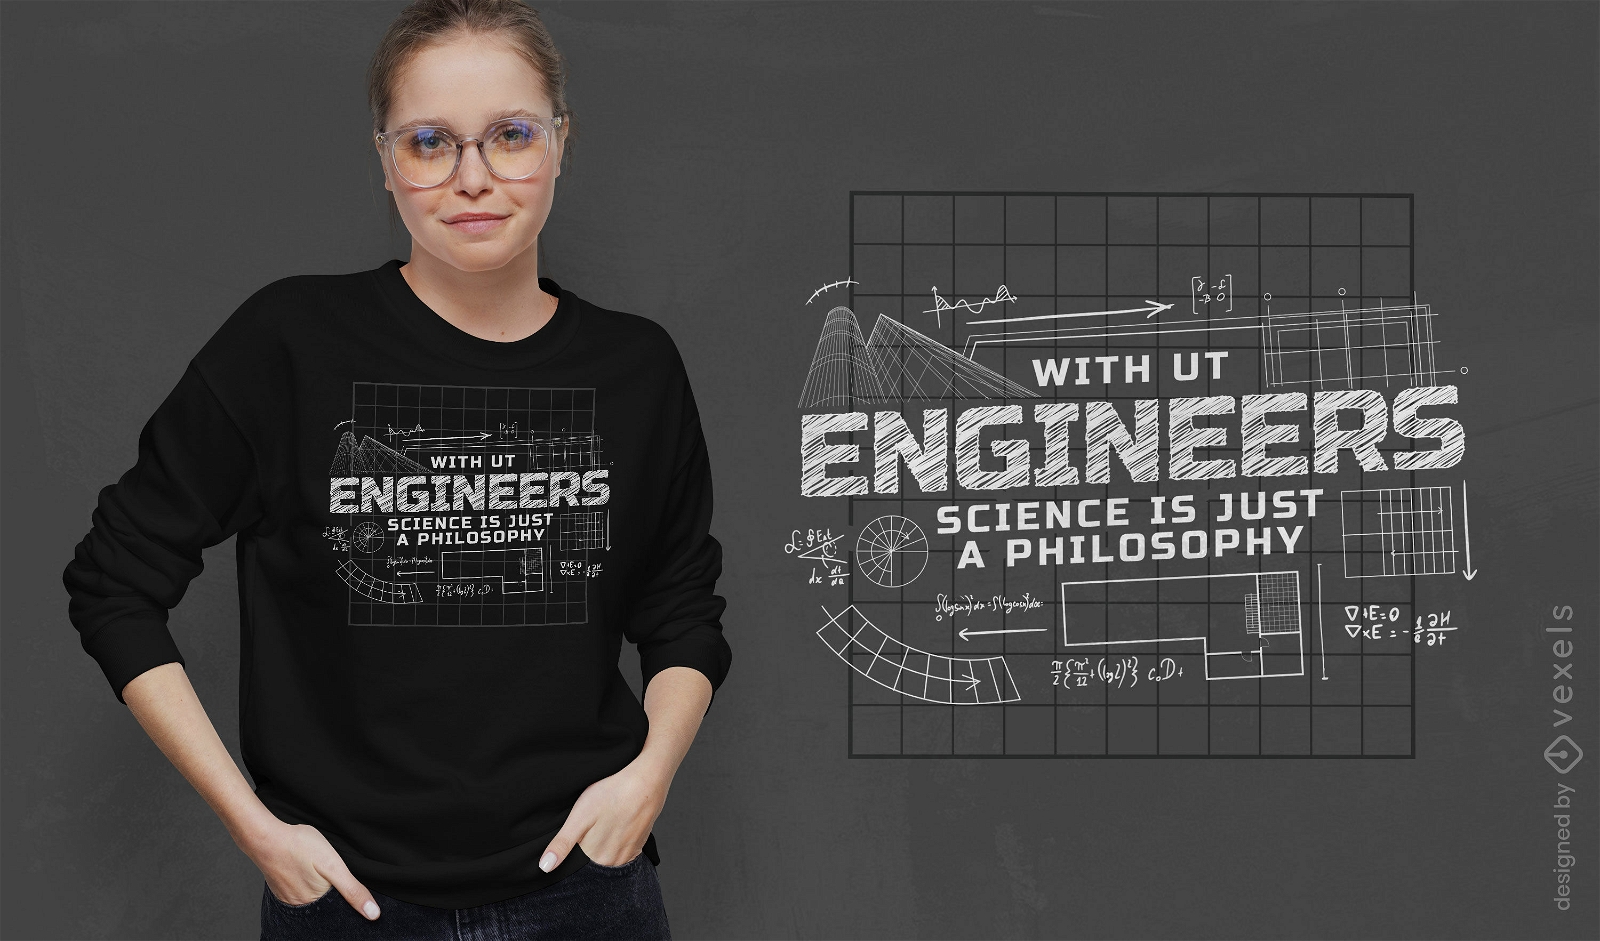 Ingenieure zitieren T-Shirt-Design